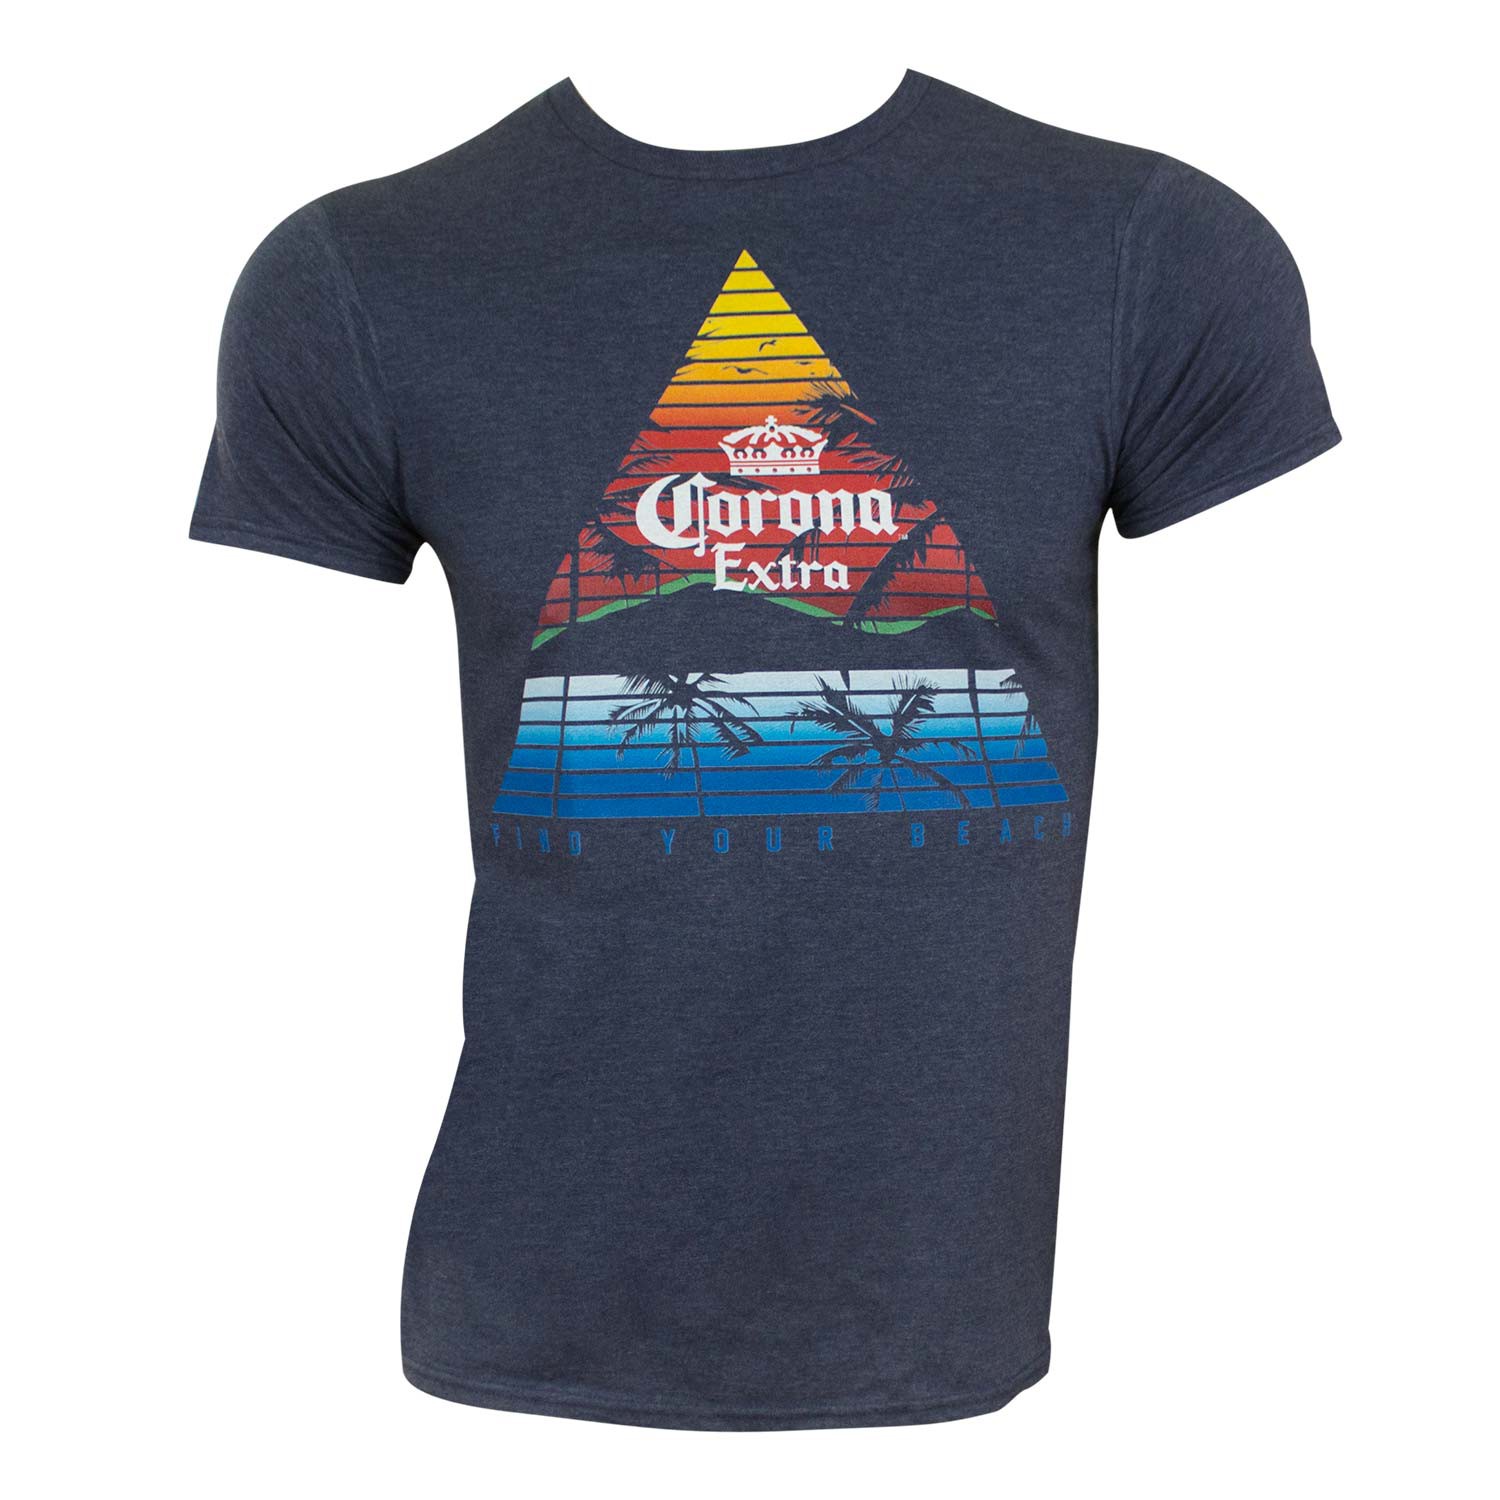 Corona Extra Triangle Logo Tee Shirt